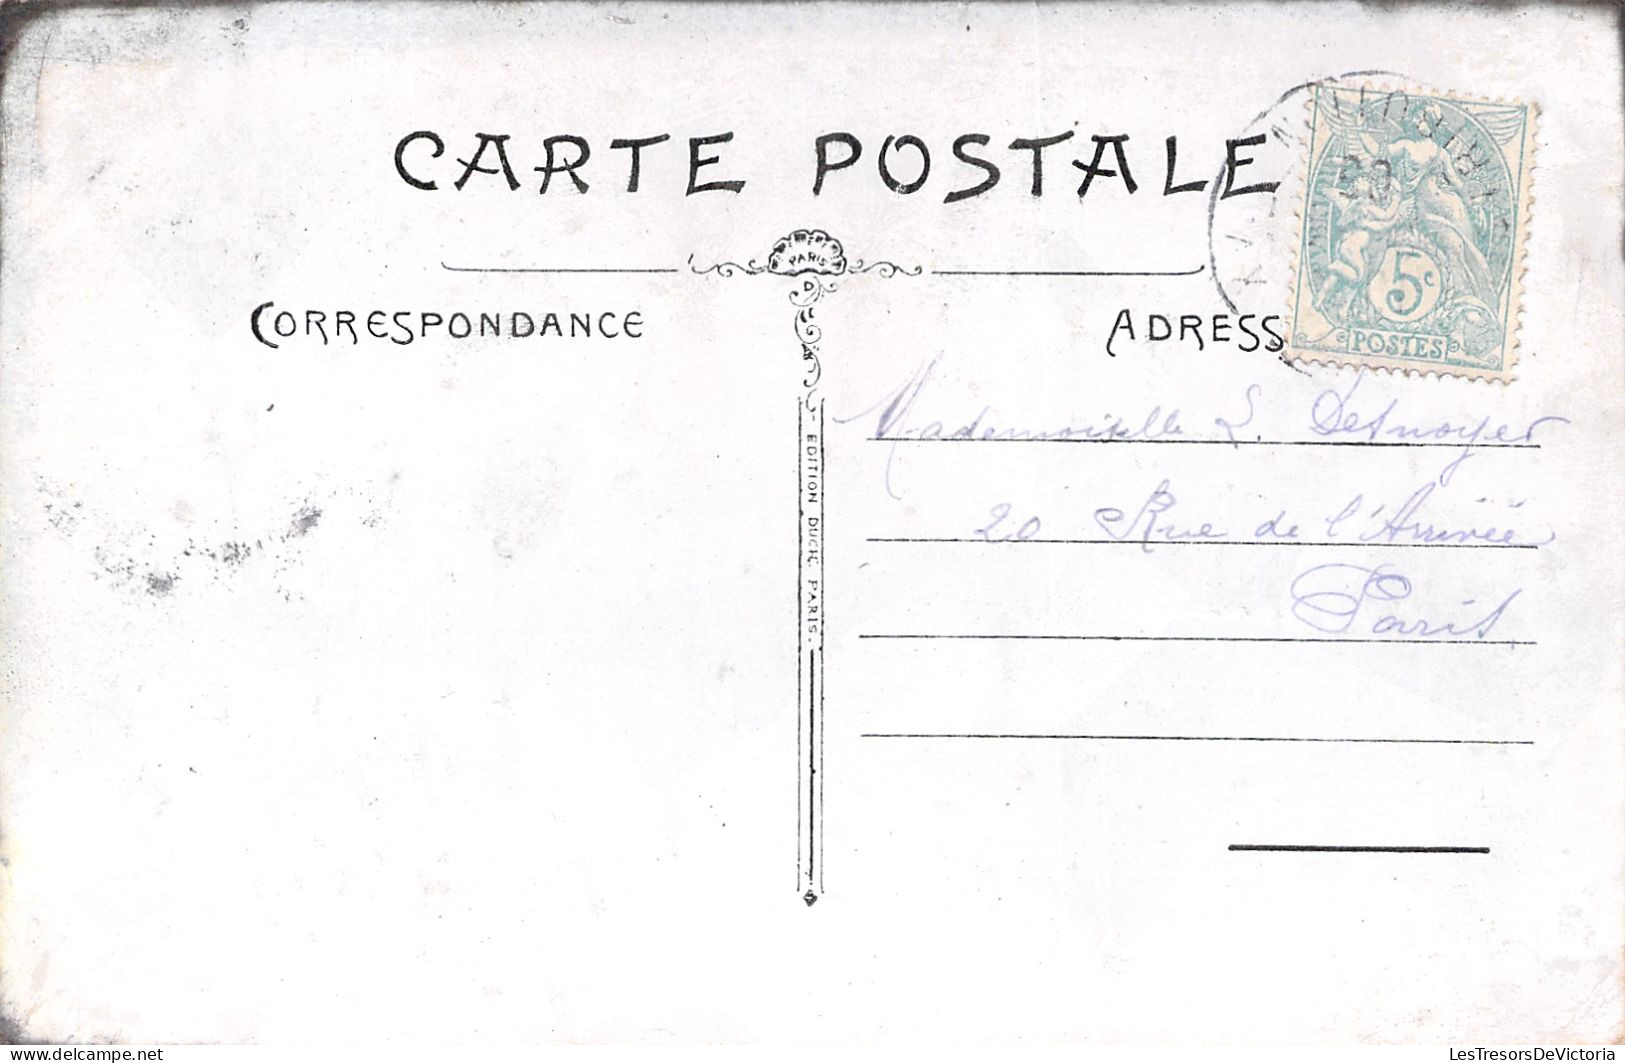 1er AVRIL - Poisson - Poeme Du Poisson D'avril - Carte Postale Ancienne - - Erster April